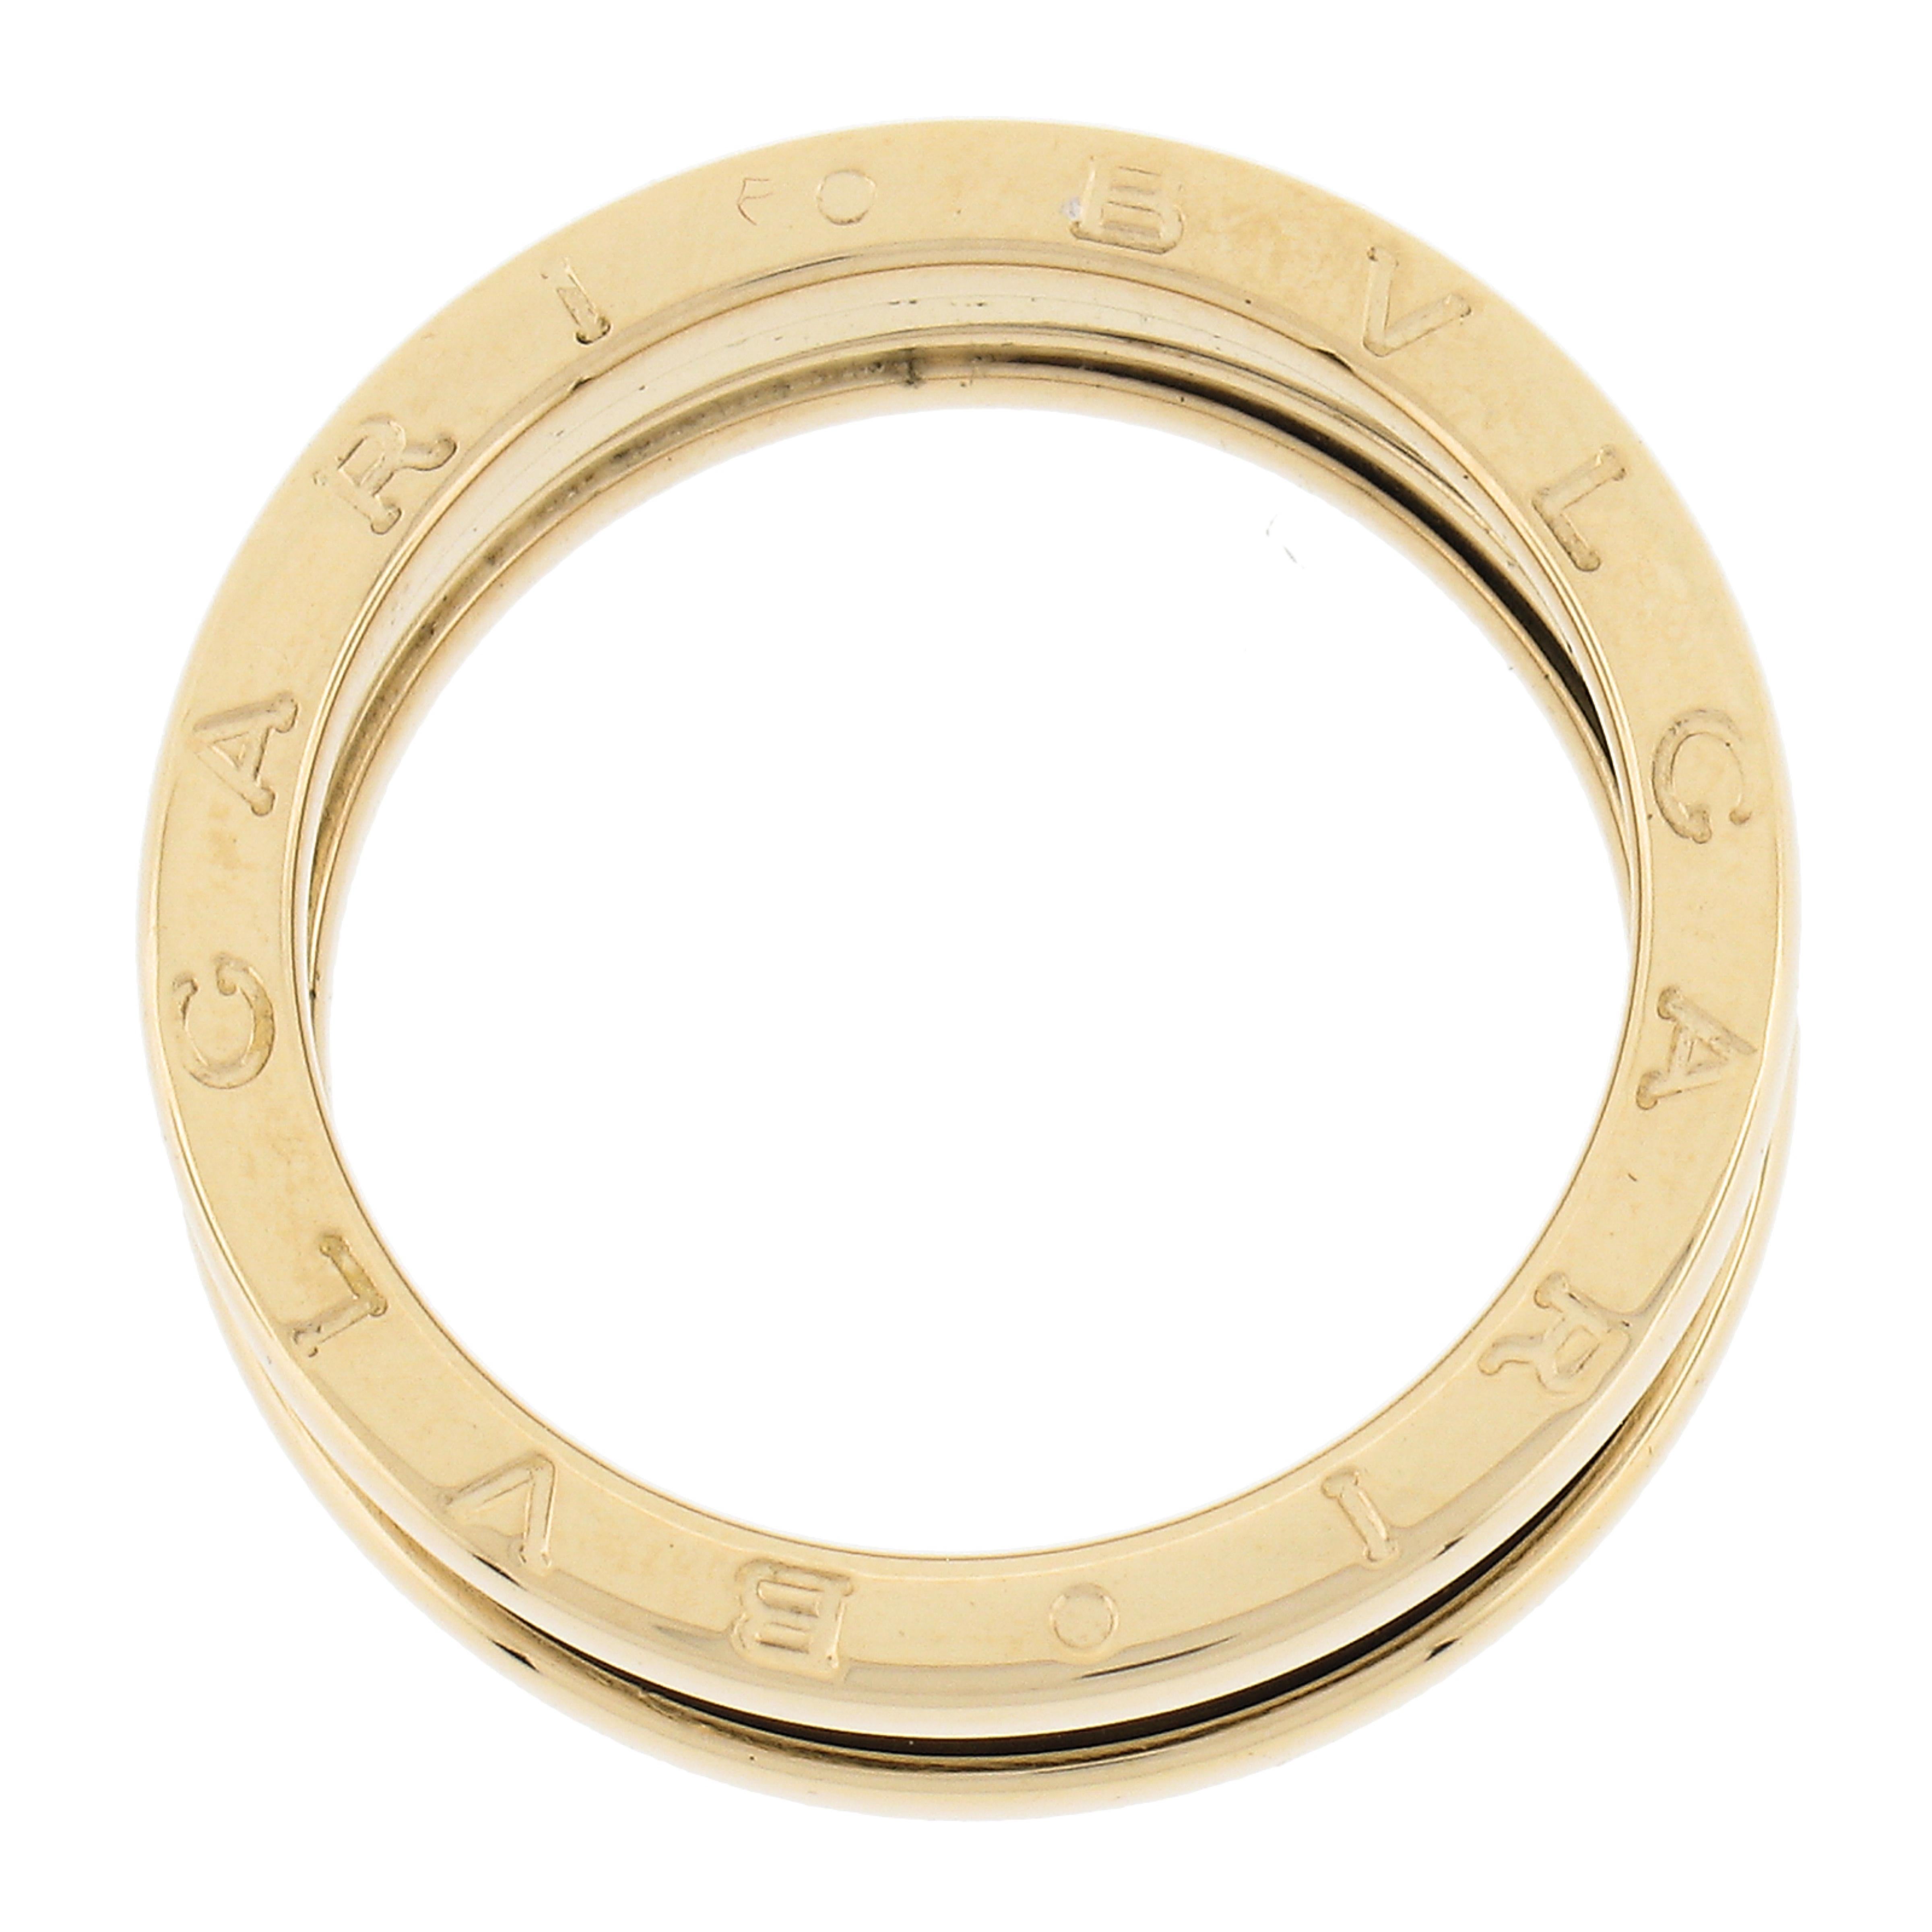 Bvlgari Italienischer 18k Gelbgold 7,6 mm breiter B. Zero Ehering mit 3 Ringen, Größe 62 4